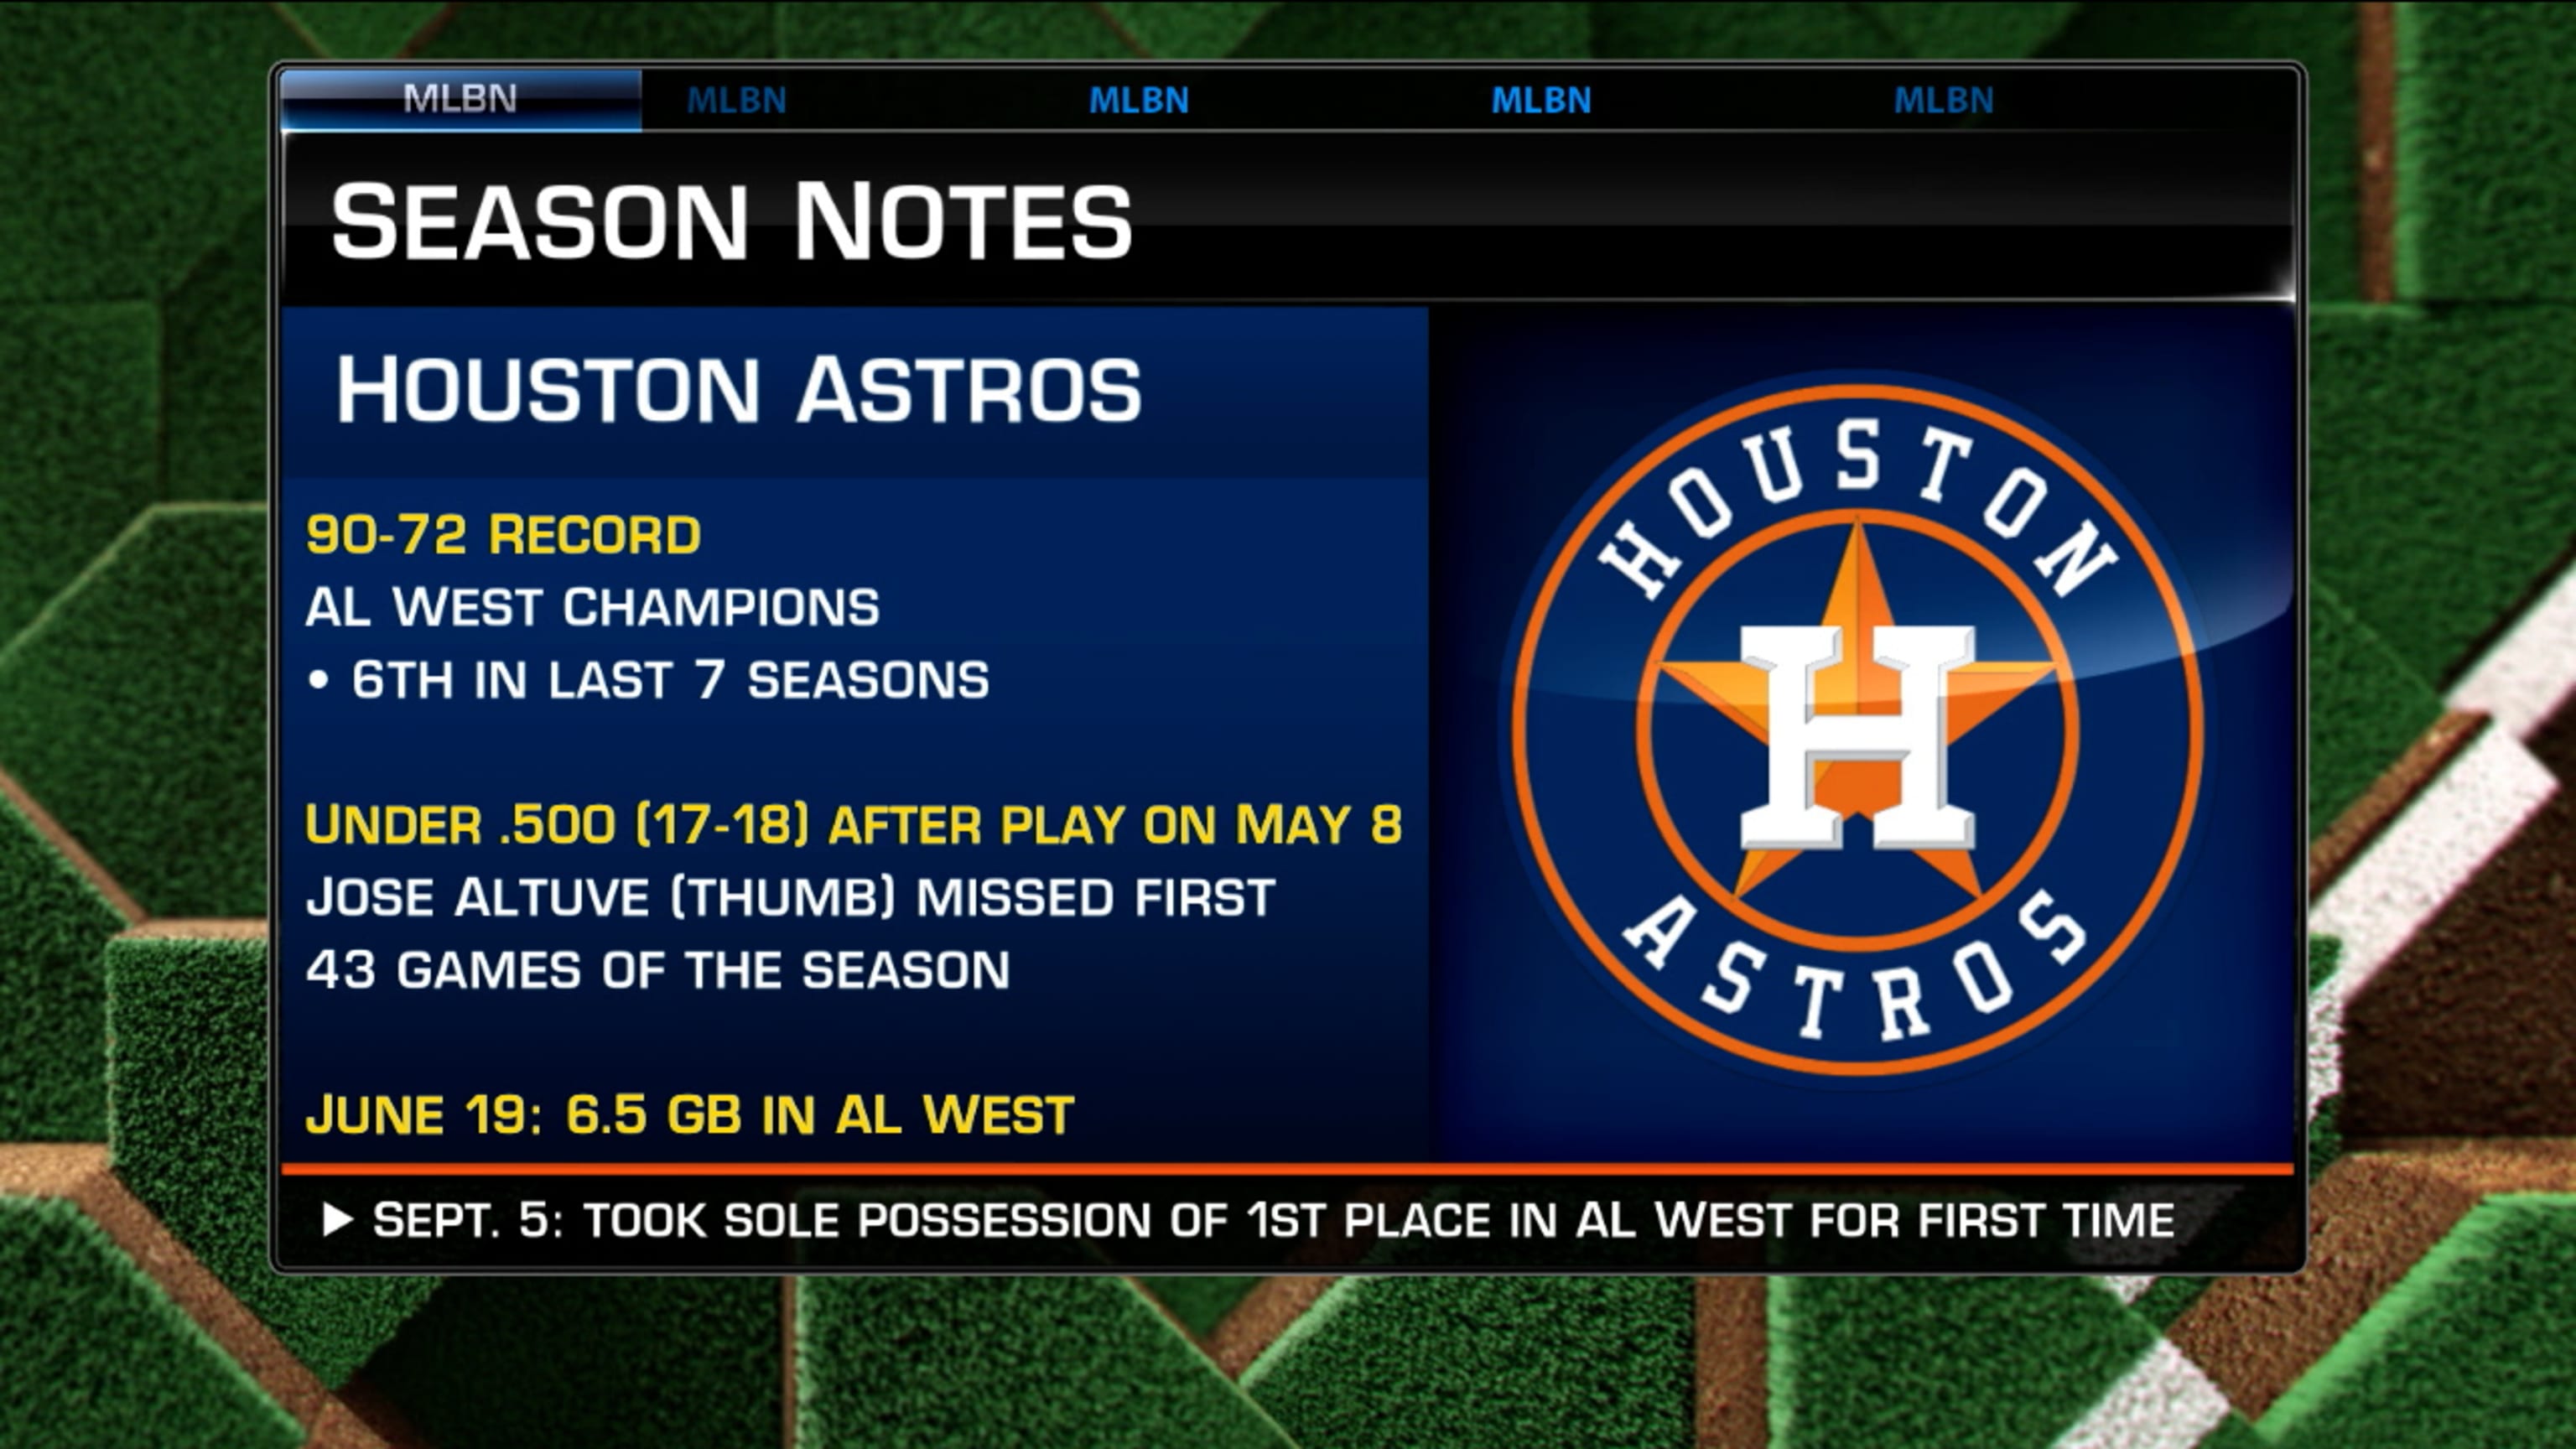 Houston Astros MLB Shop eGift Card ($10 - $500)